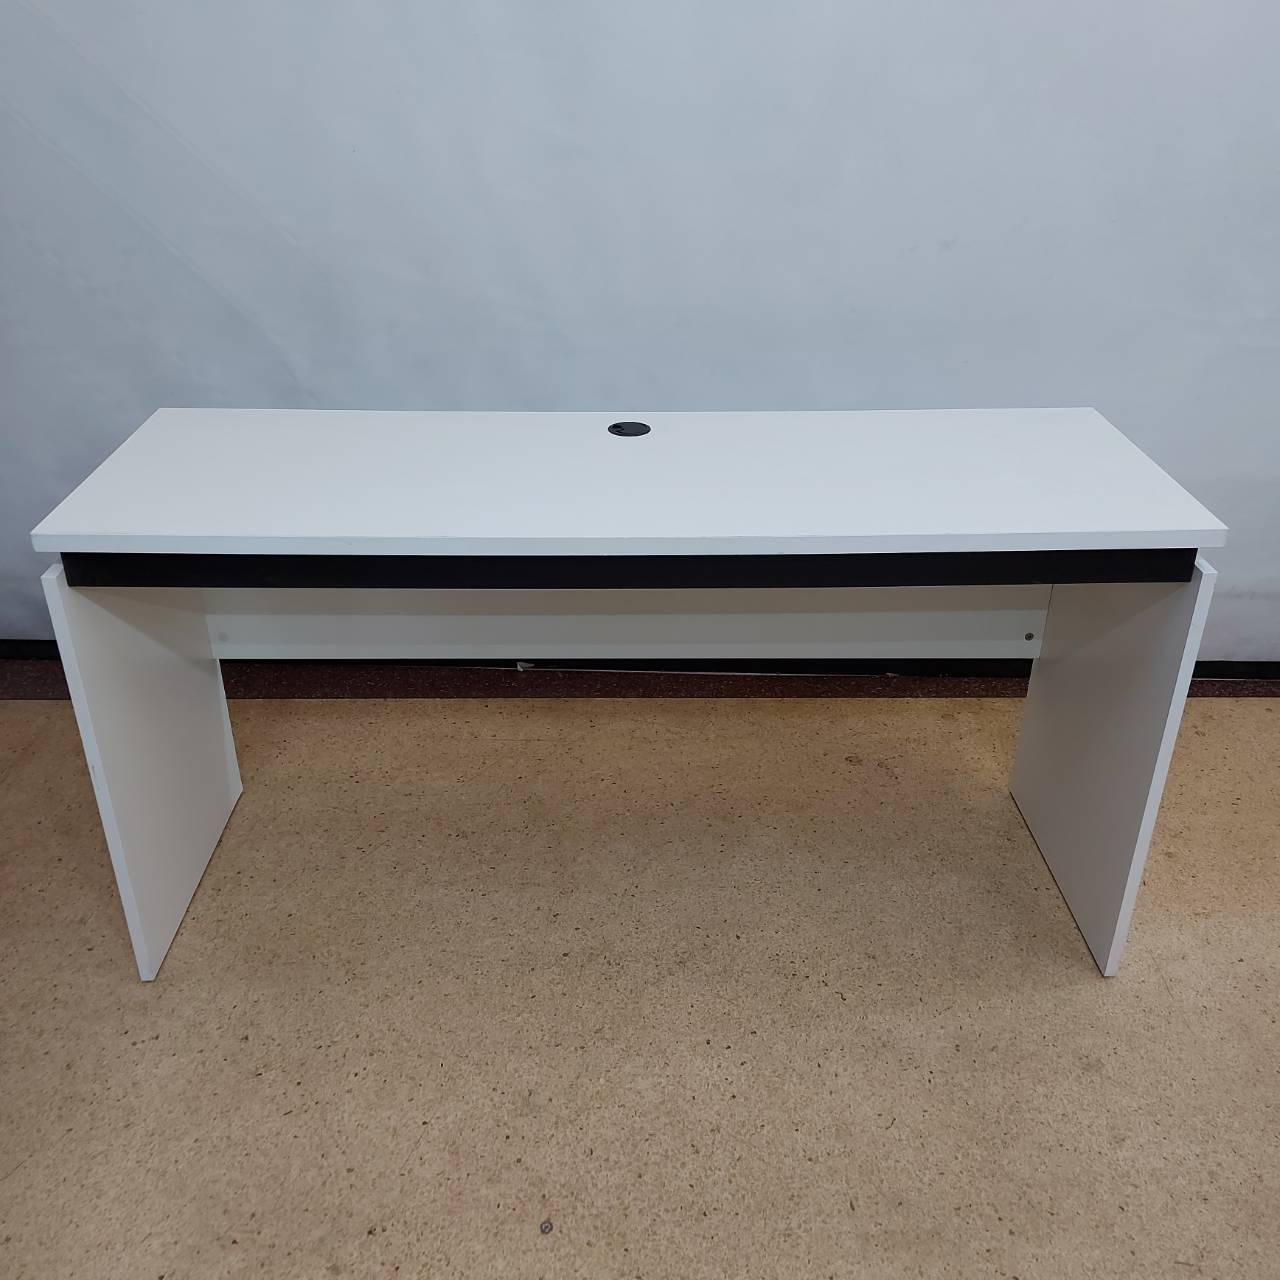  โต๊ะทำงานไม้สีขาวแบบโล่งพร้อมช่องร้อยสายไฟ